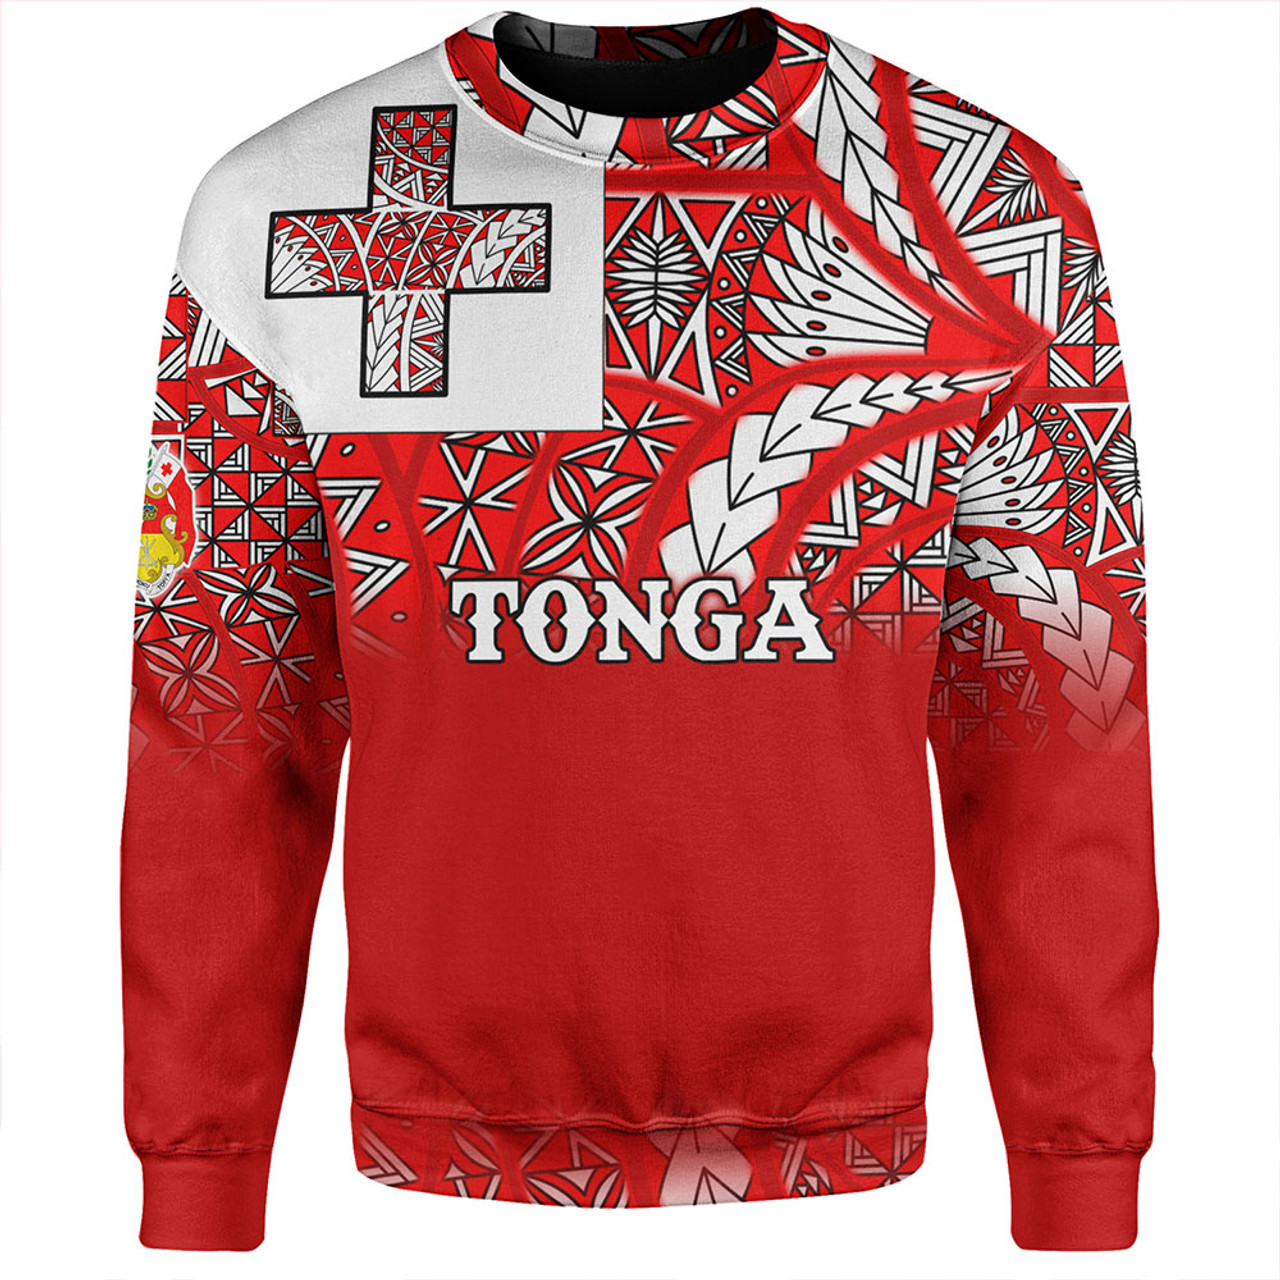 Tonga Sweatshirt - Tonga Flag Color With Traditional Patterns